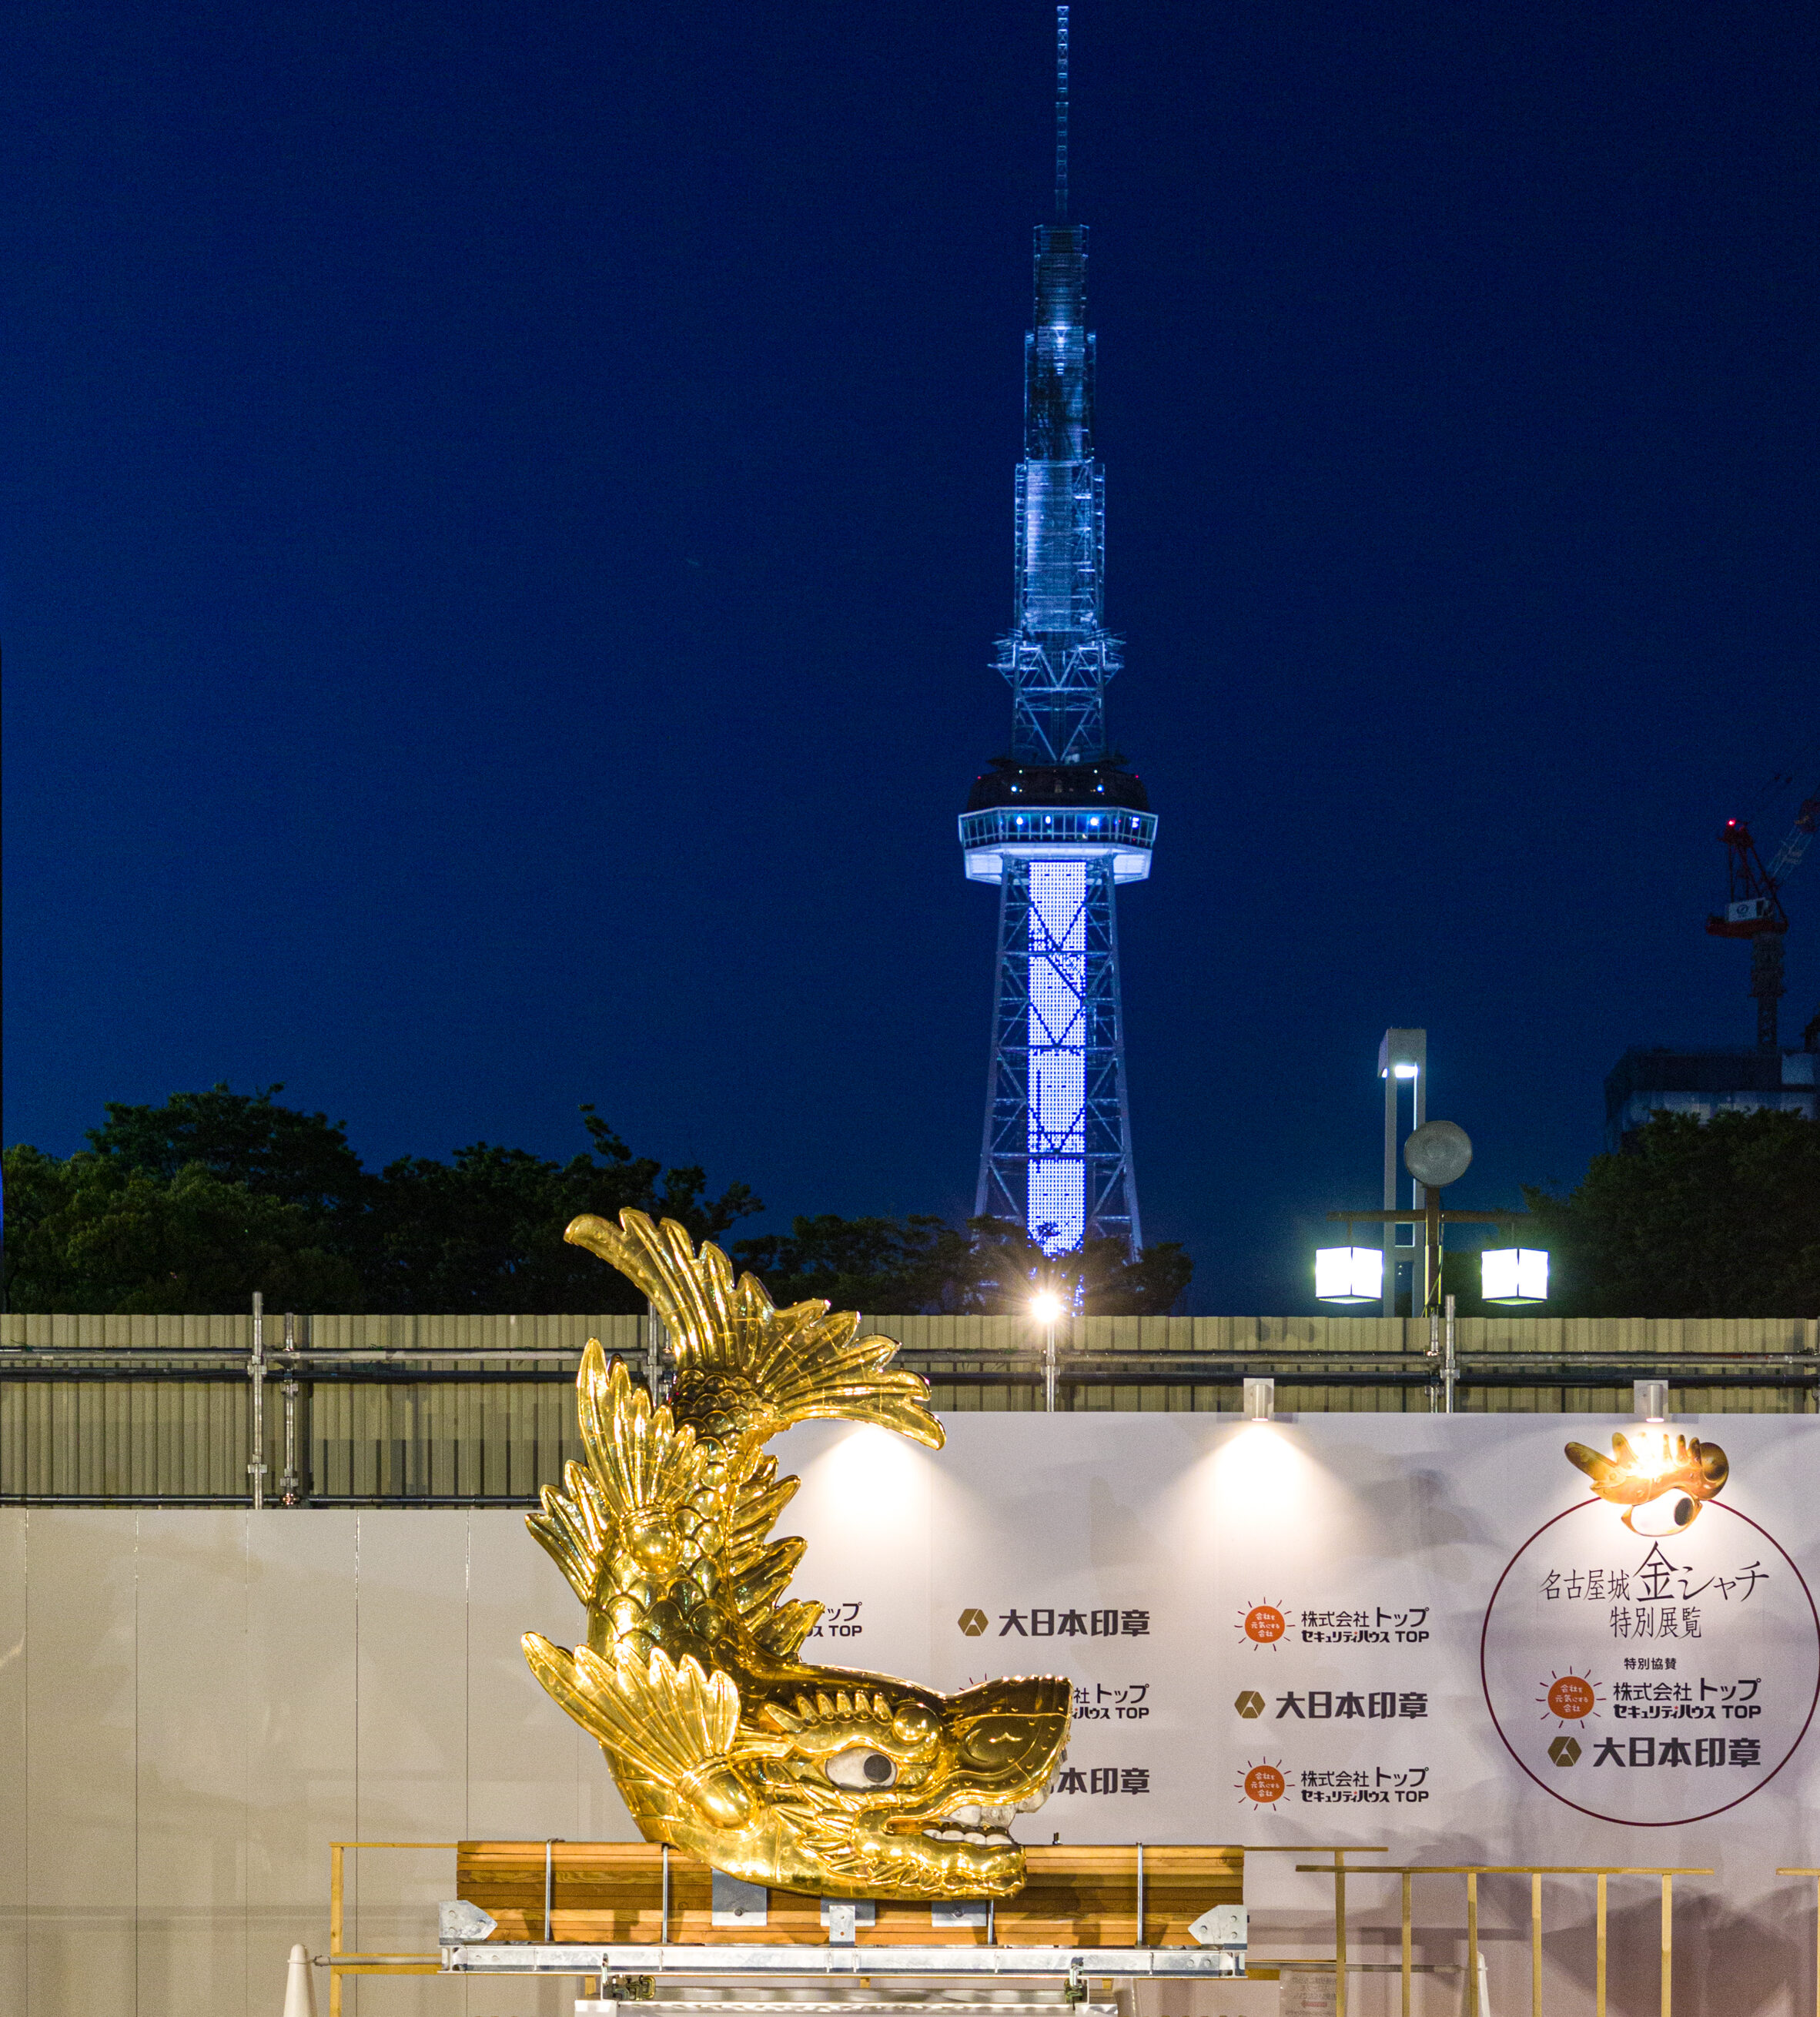 コロナ終息の願いも込めて 名古屋のシンボル 金シャチが栄の ミツコシマエヒロバス に降臨 Nagoya ナゴヤドット